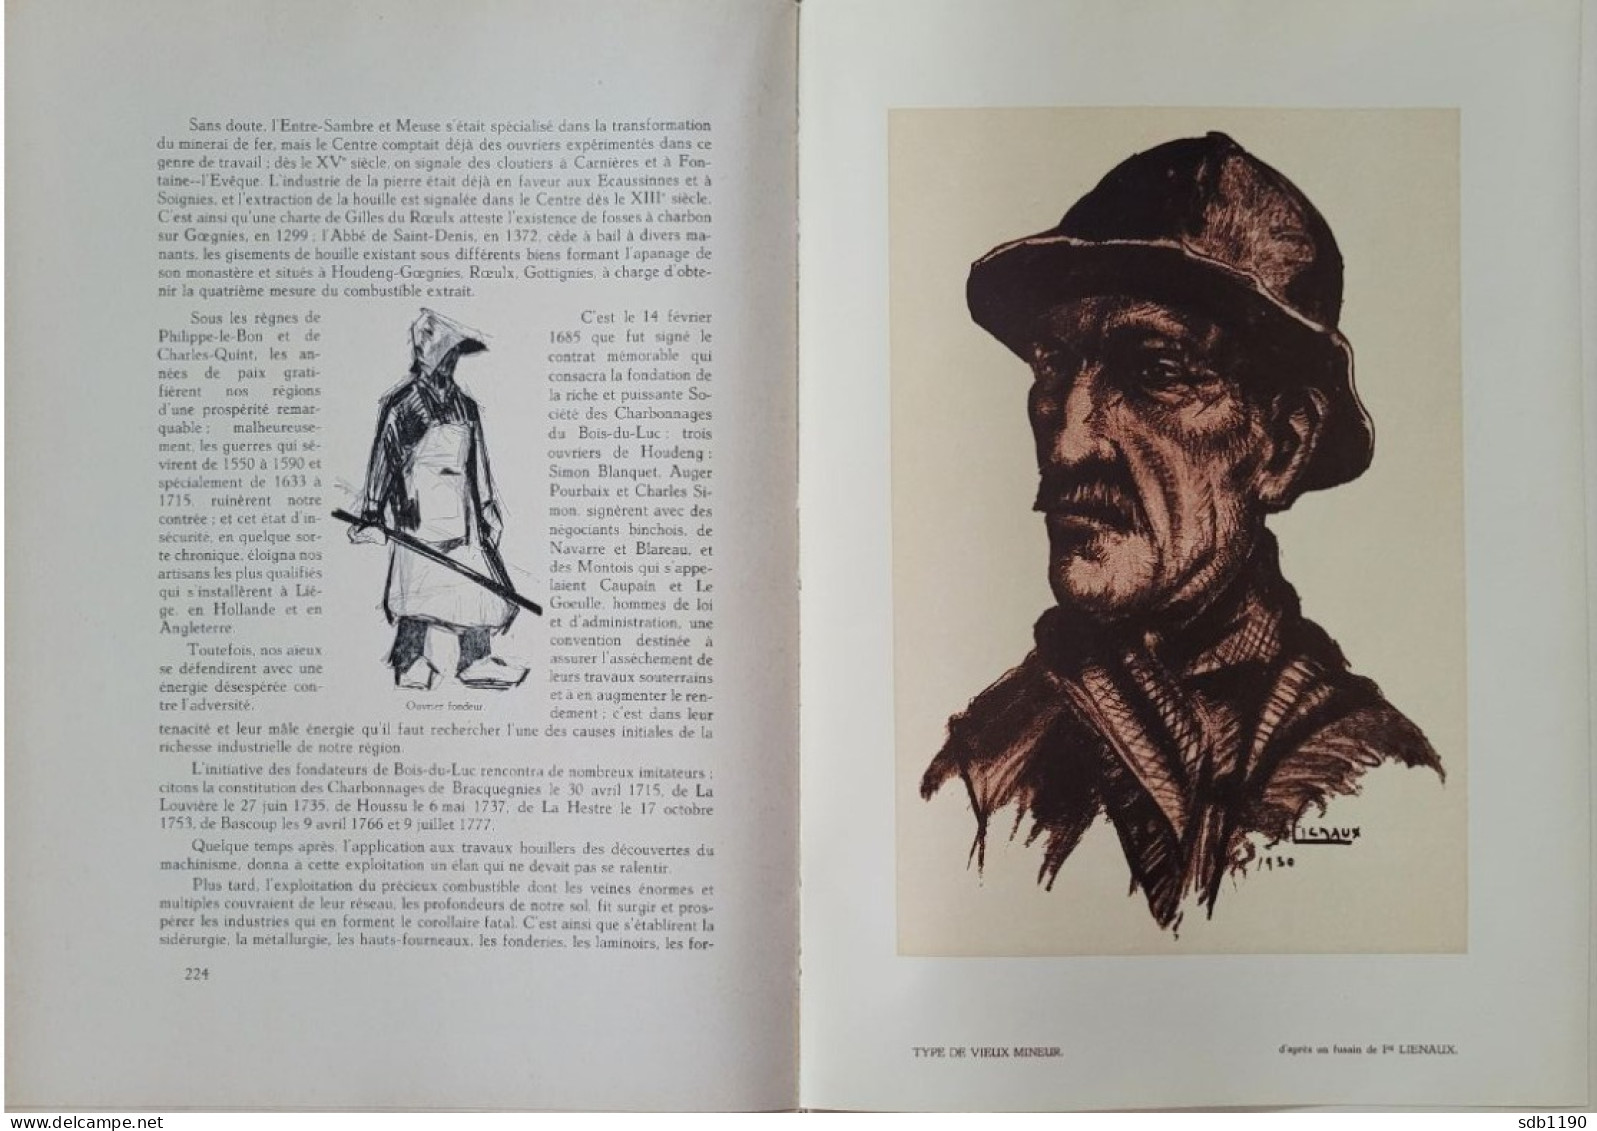 Livre 'Le Centre archéologique, folklorique, industriel, commercial, artistique, scolaire' 1930 avec 317 illustrations